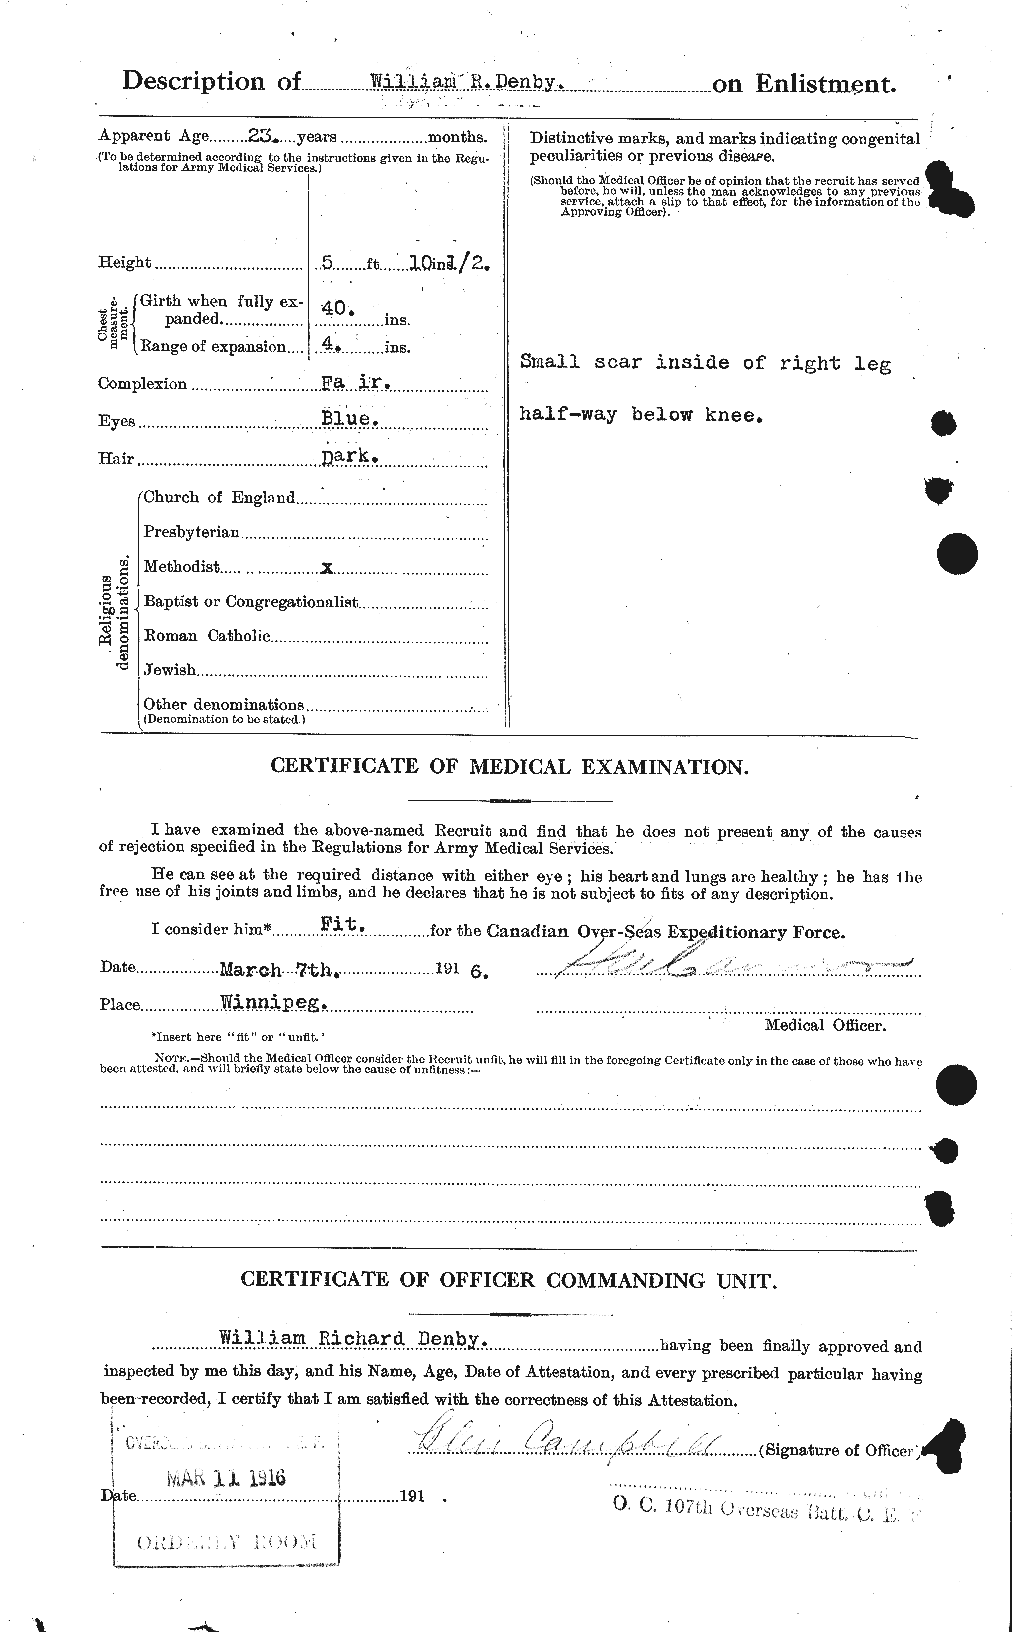 Dossiers du Personnel de la Première Guerre mondiale - CEC 287849b